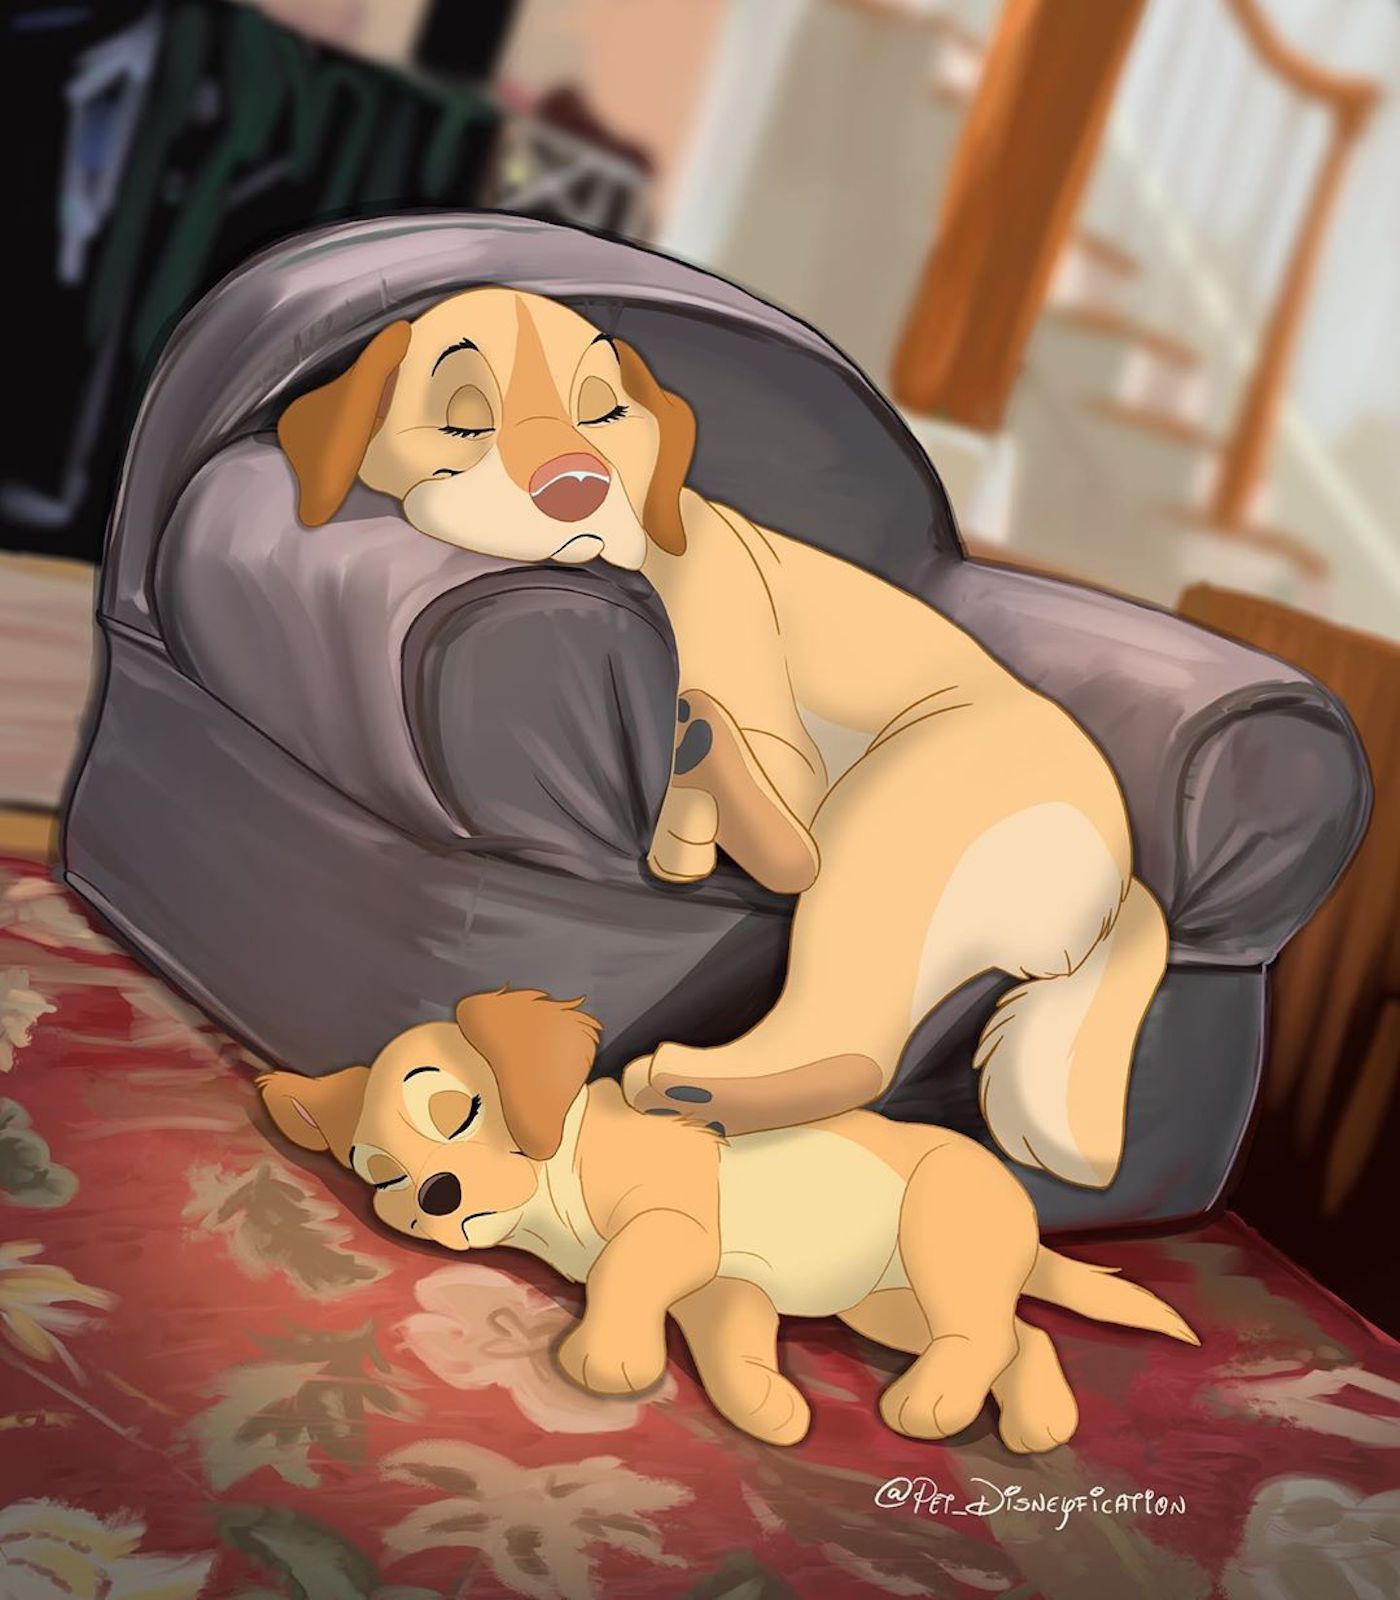 Le compte Instagram Pet Disneyfication transforme vos animaux en personnages Disney